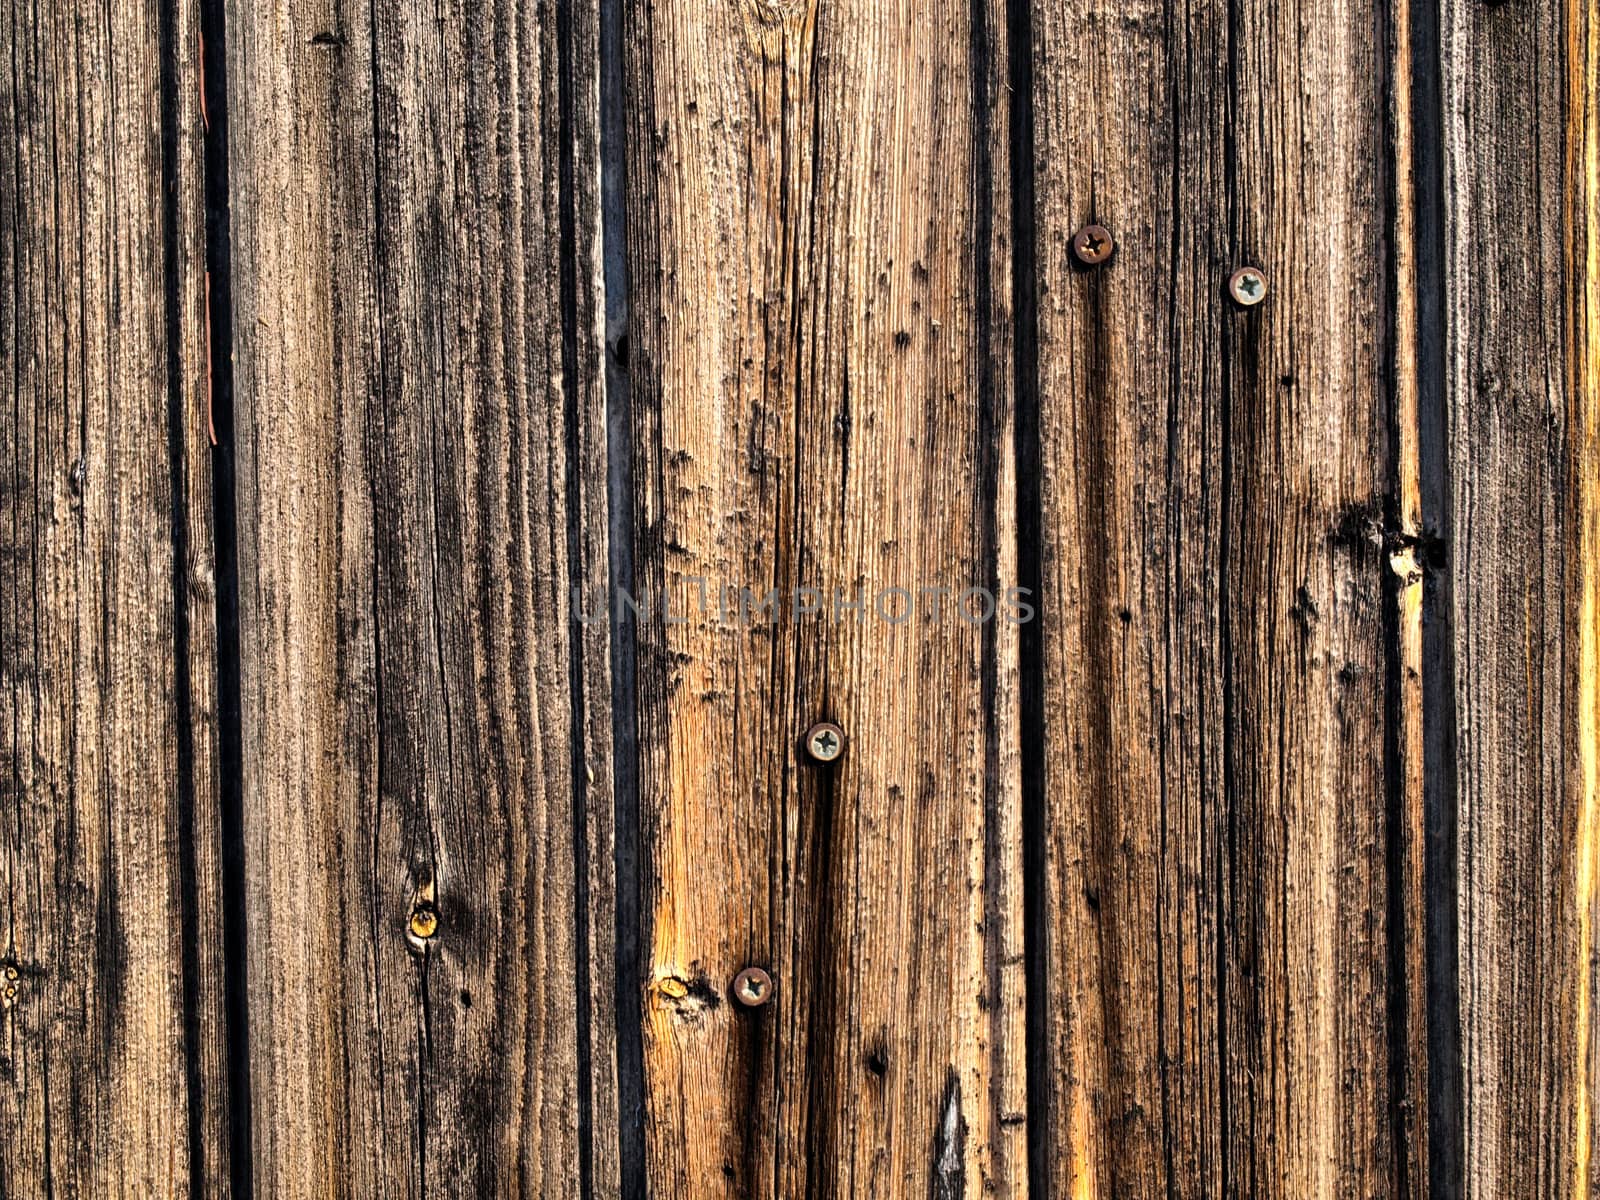 a texture image of a wooden door